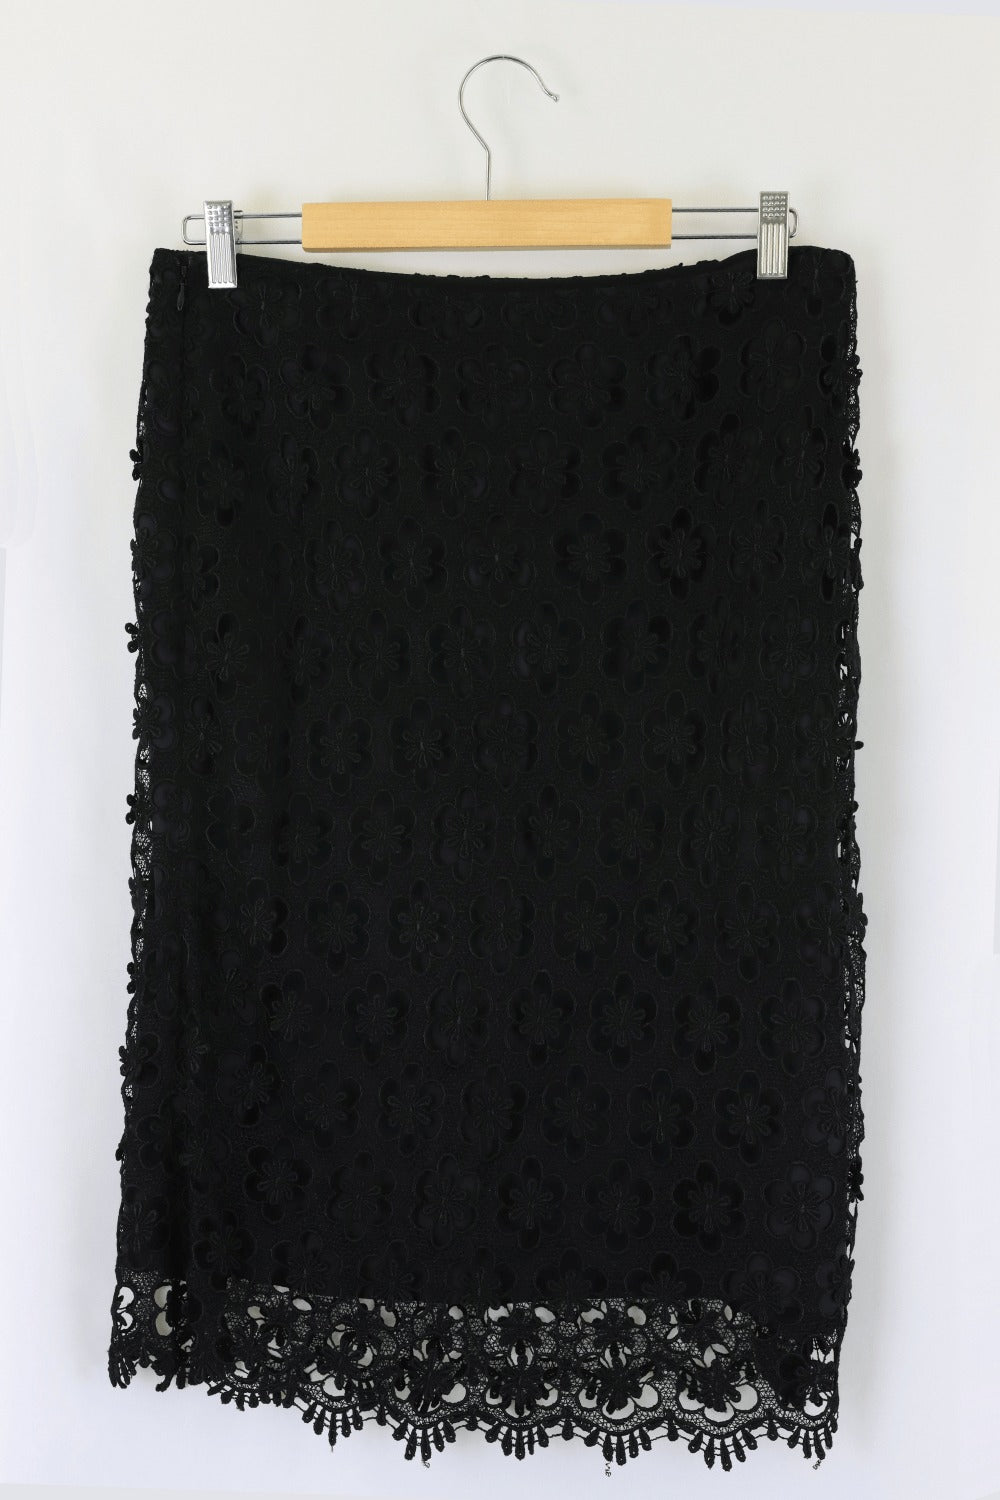 Alfani Black Lace Skirt 12